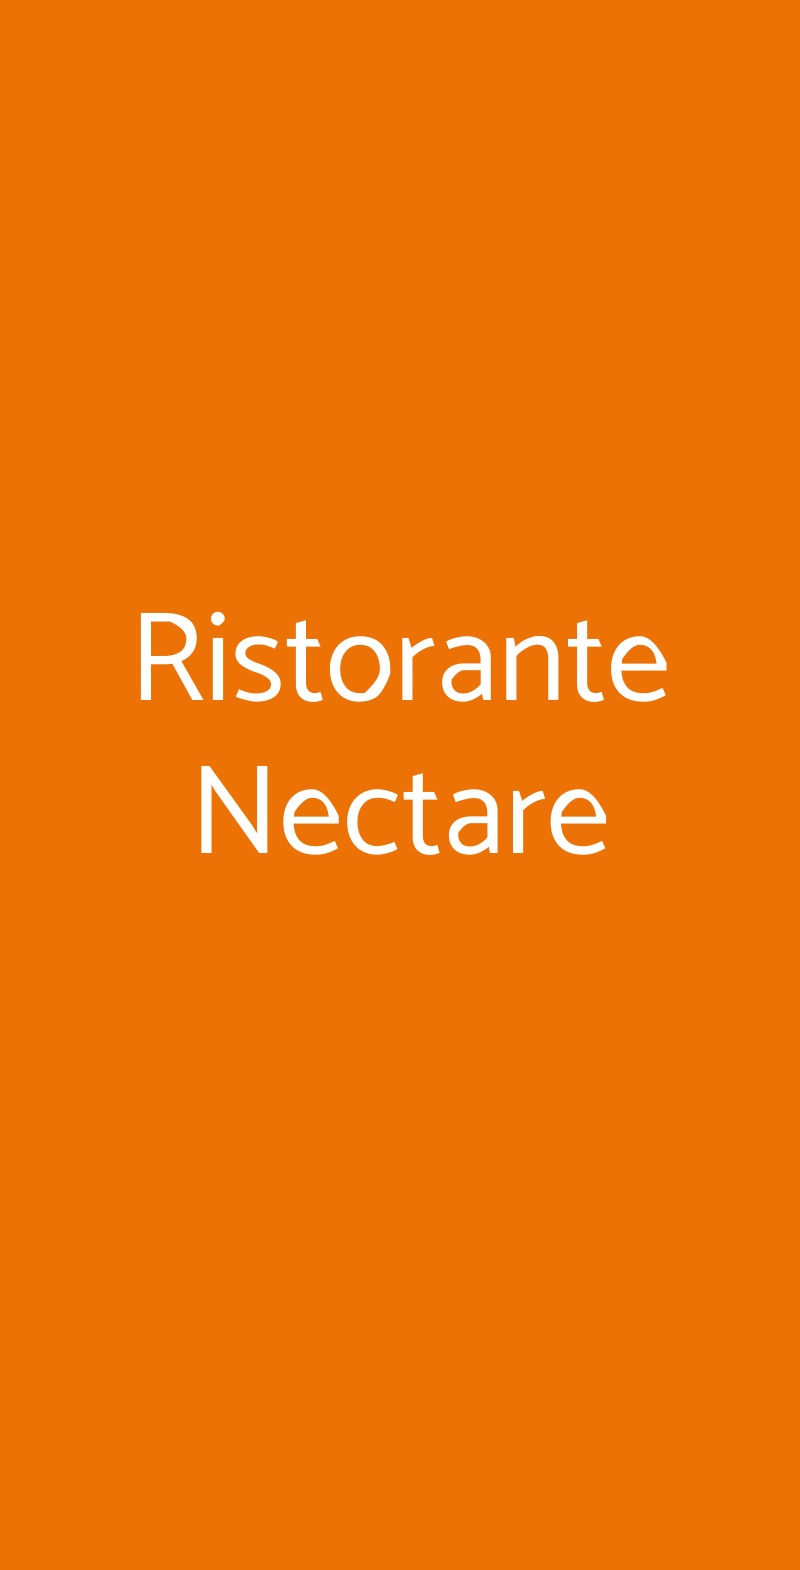 Ristorante Nectare Milano menù 1 pagina